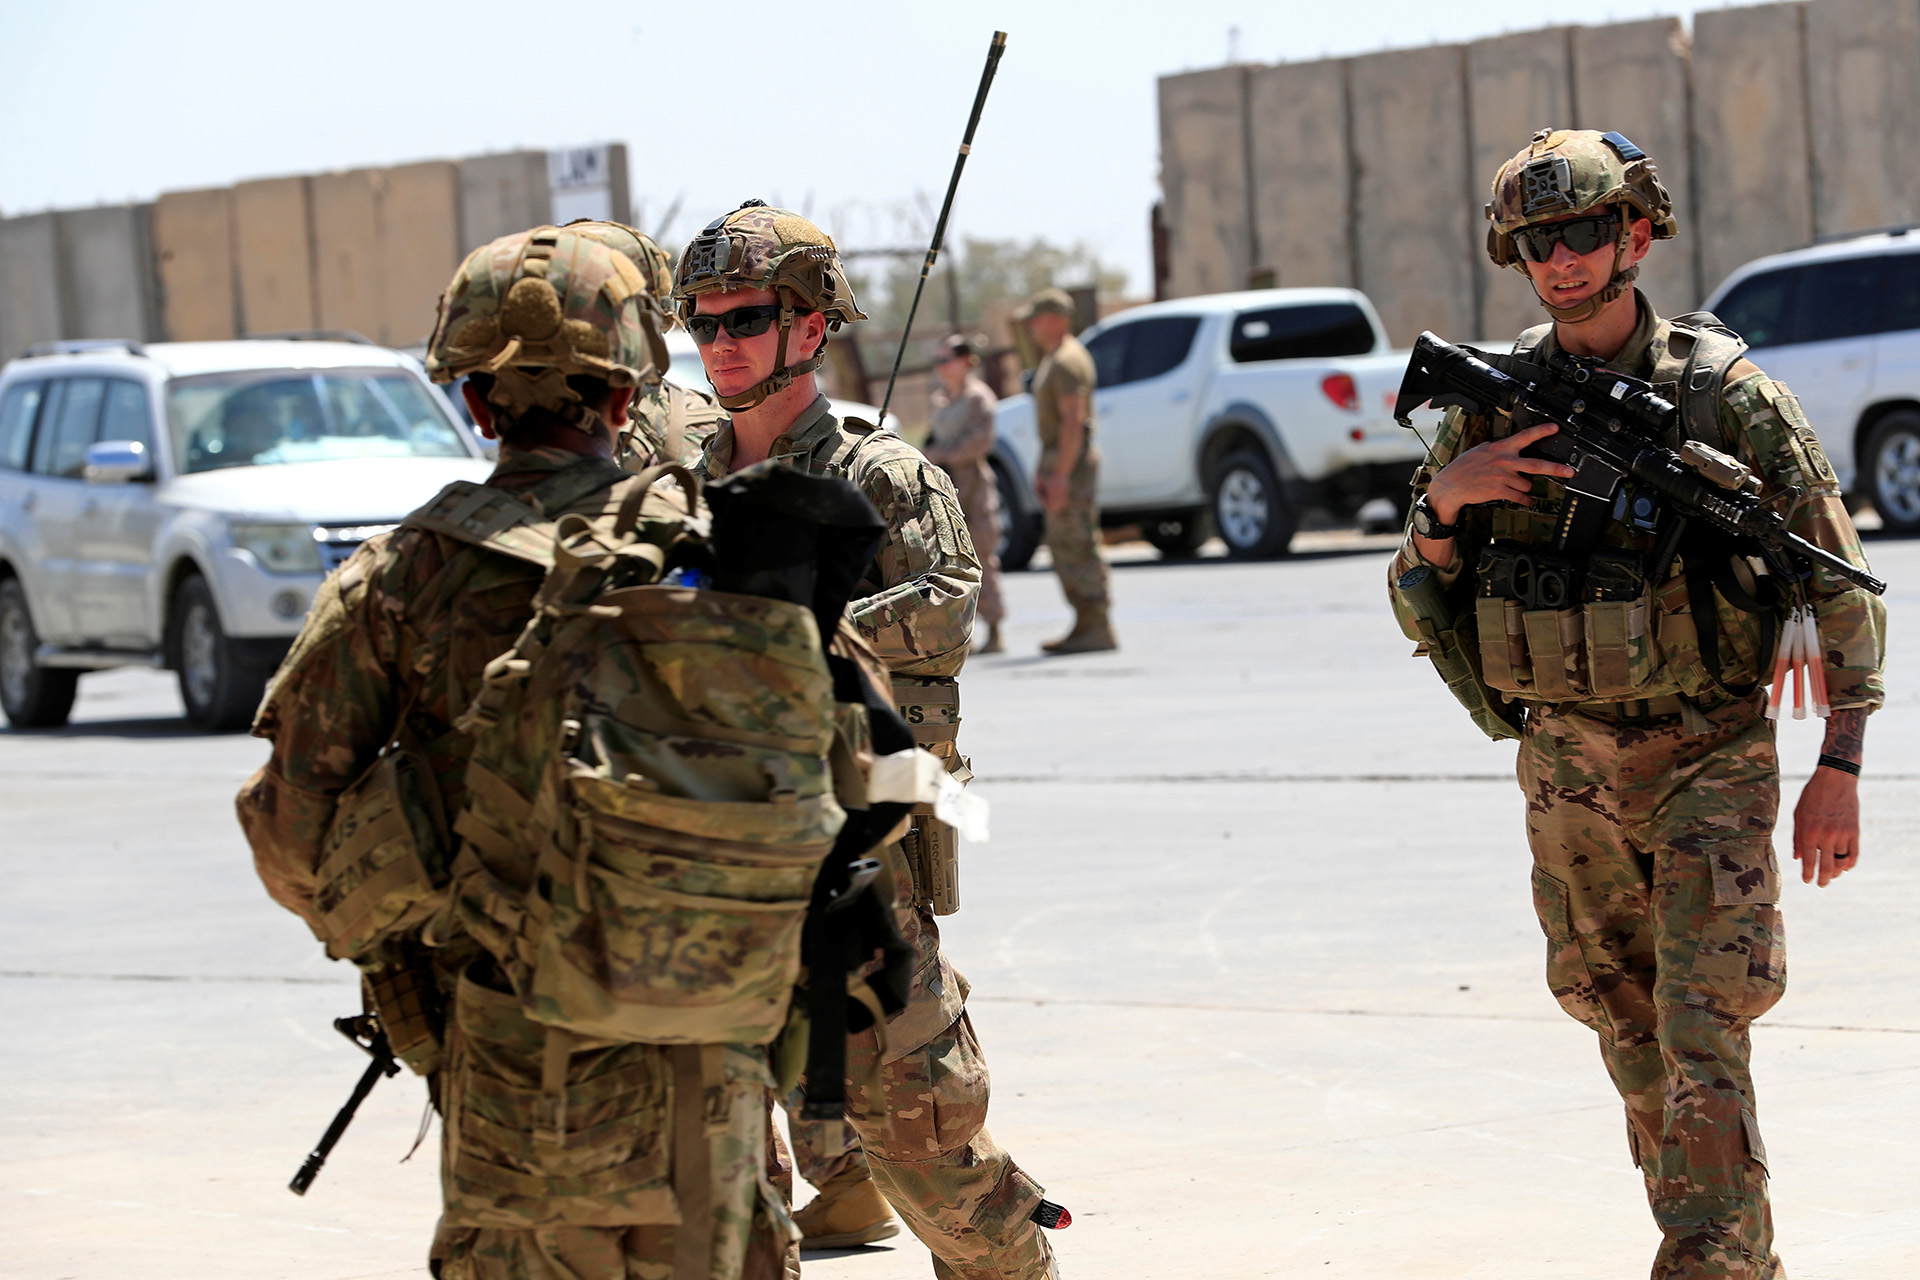 الانسحاب الأميركي من العراق على طاولة البحث من جديد | سياسة – البوكس نيوز